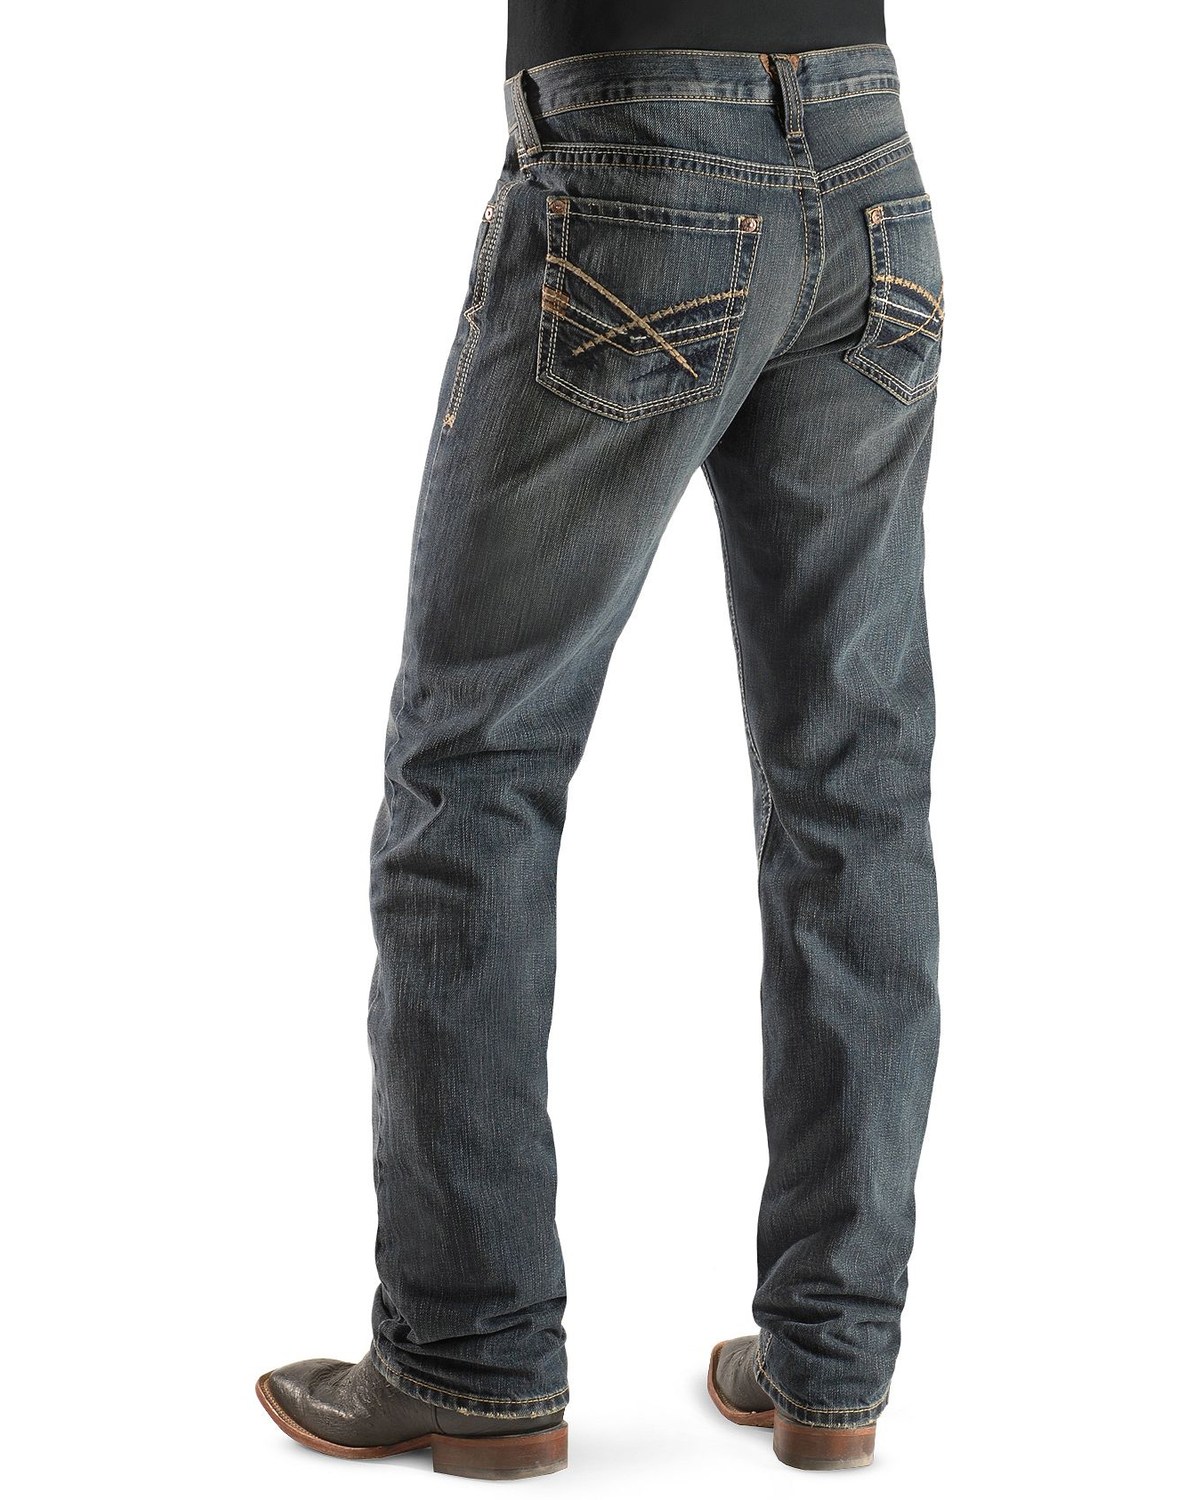 Ariat Men's M5 Arrowhead Jeans